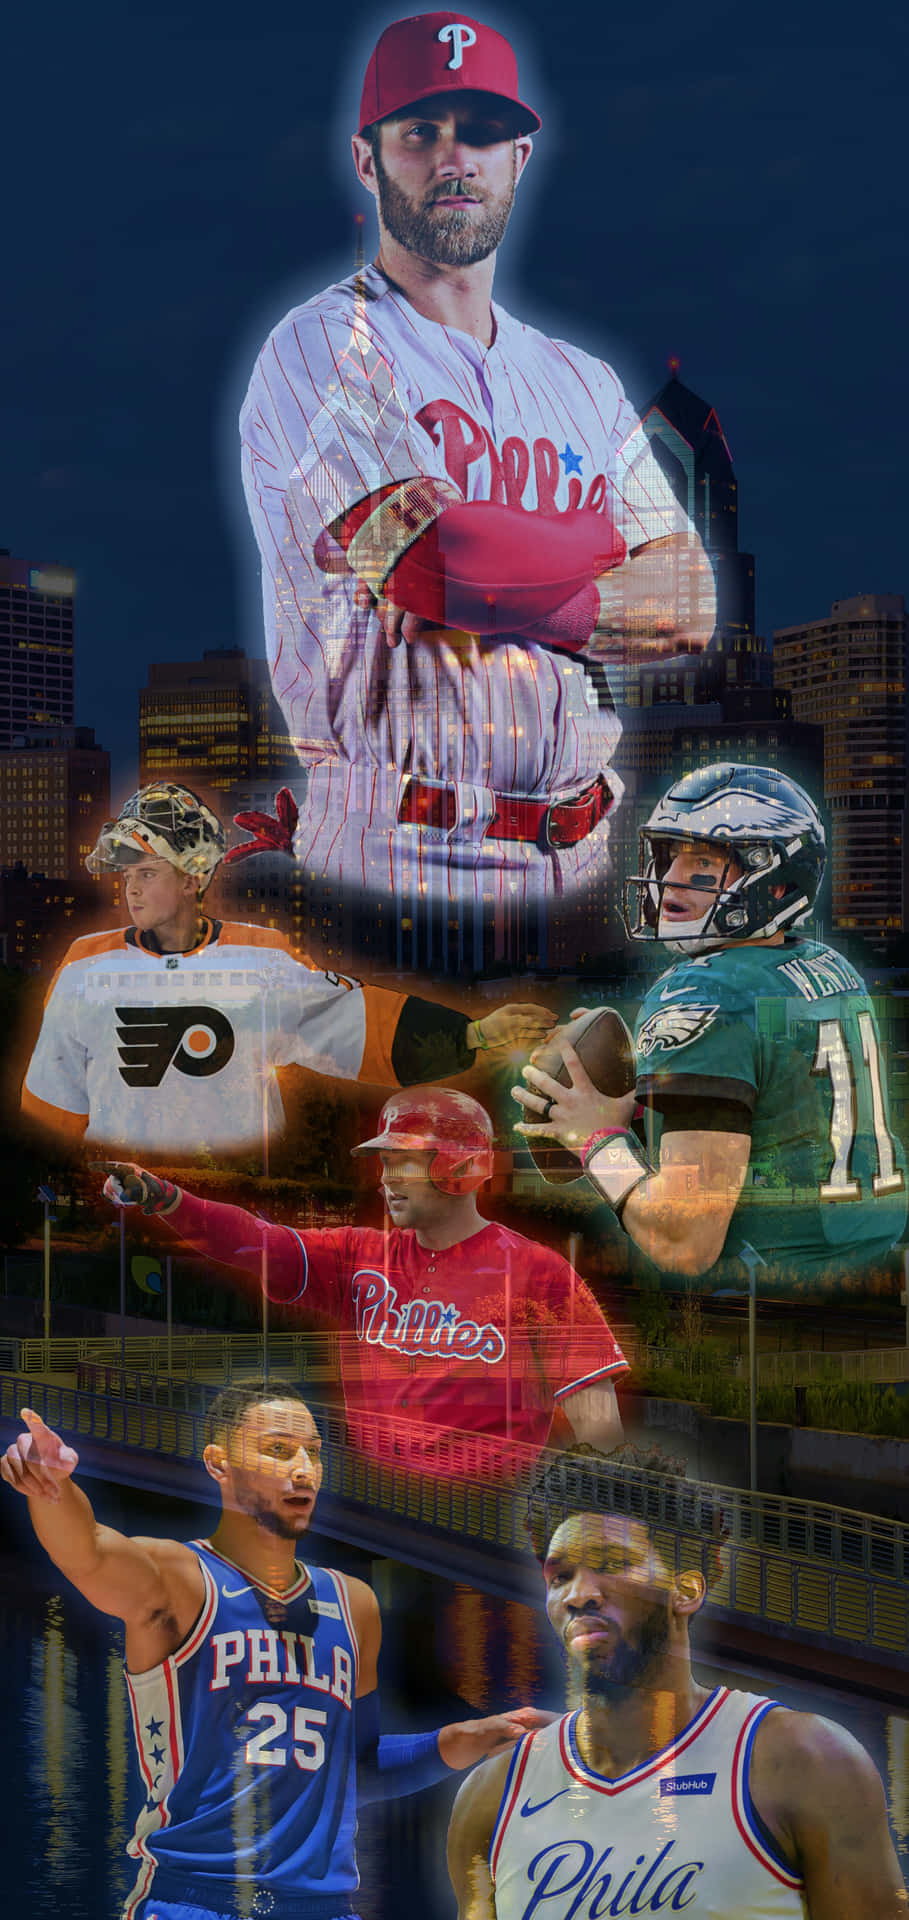 Einecollage Von Baseballspielern In Einer Stadt Wallpaper